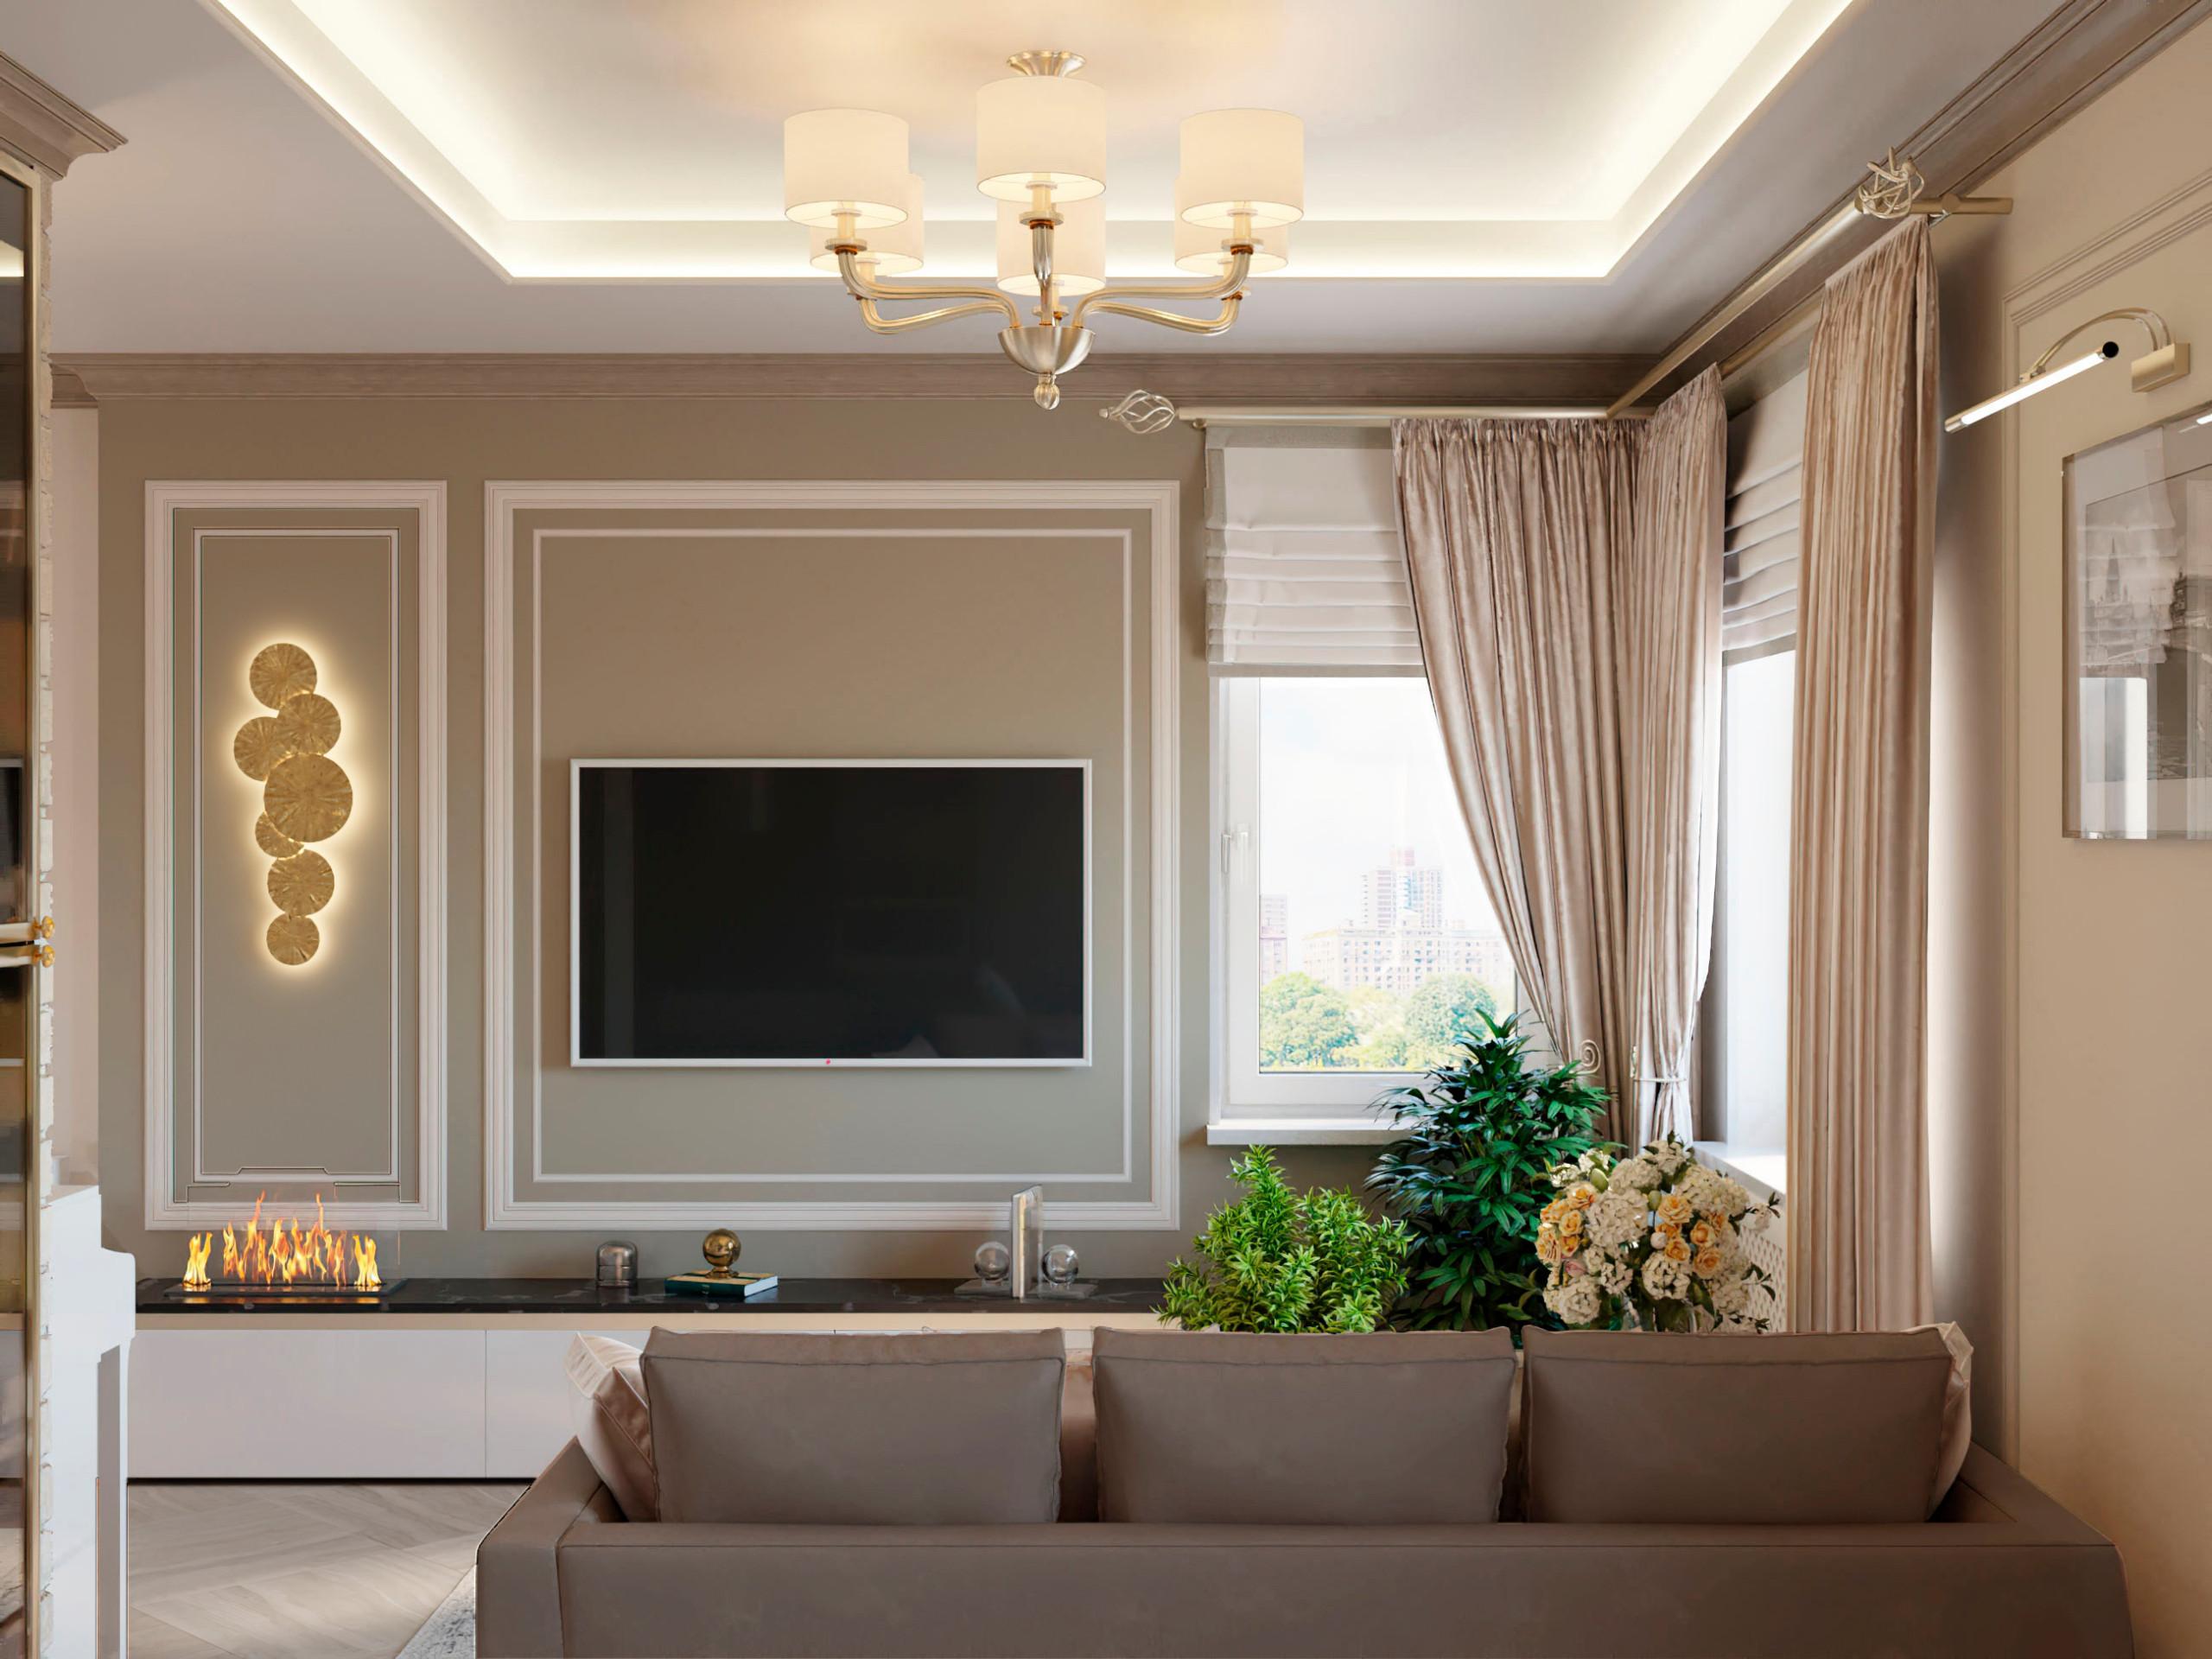 Интерьер гостиной cветовыми линиями, подсветкой настенной, подсветкой светодиодной и с подсветкой в современном стиле